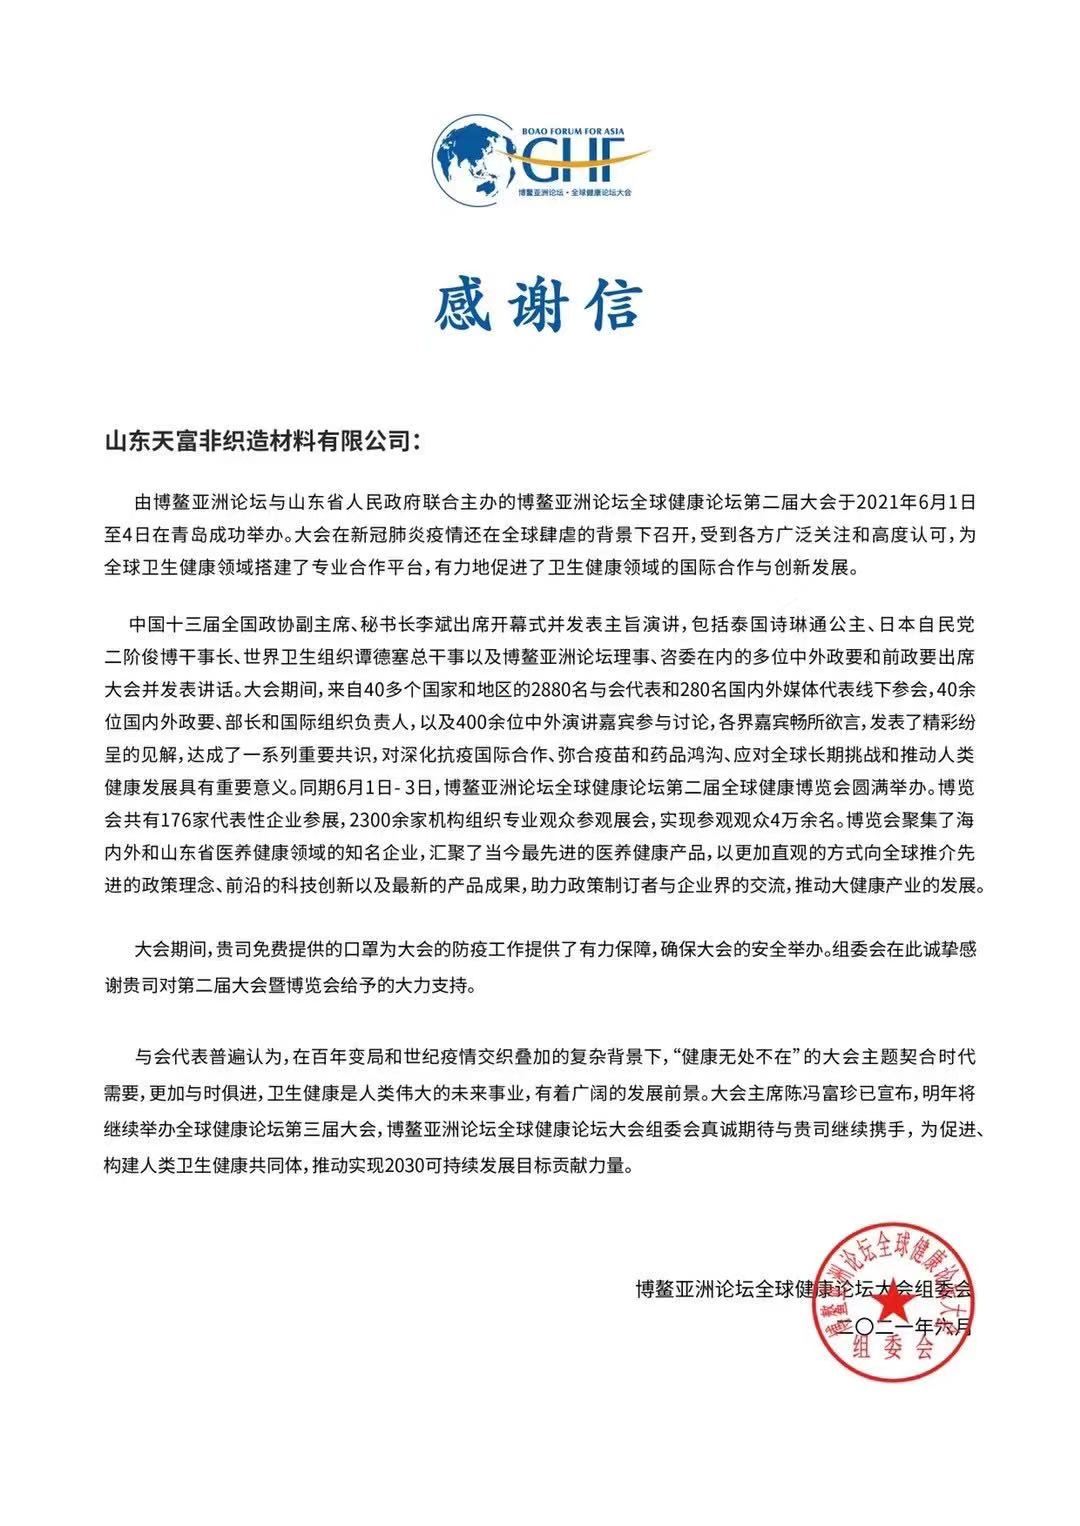 乐虎国际唯一登录www(中国)集团官网永远是防疫工作的有力保障